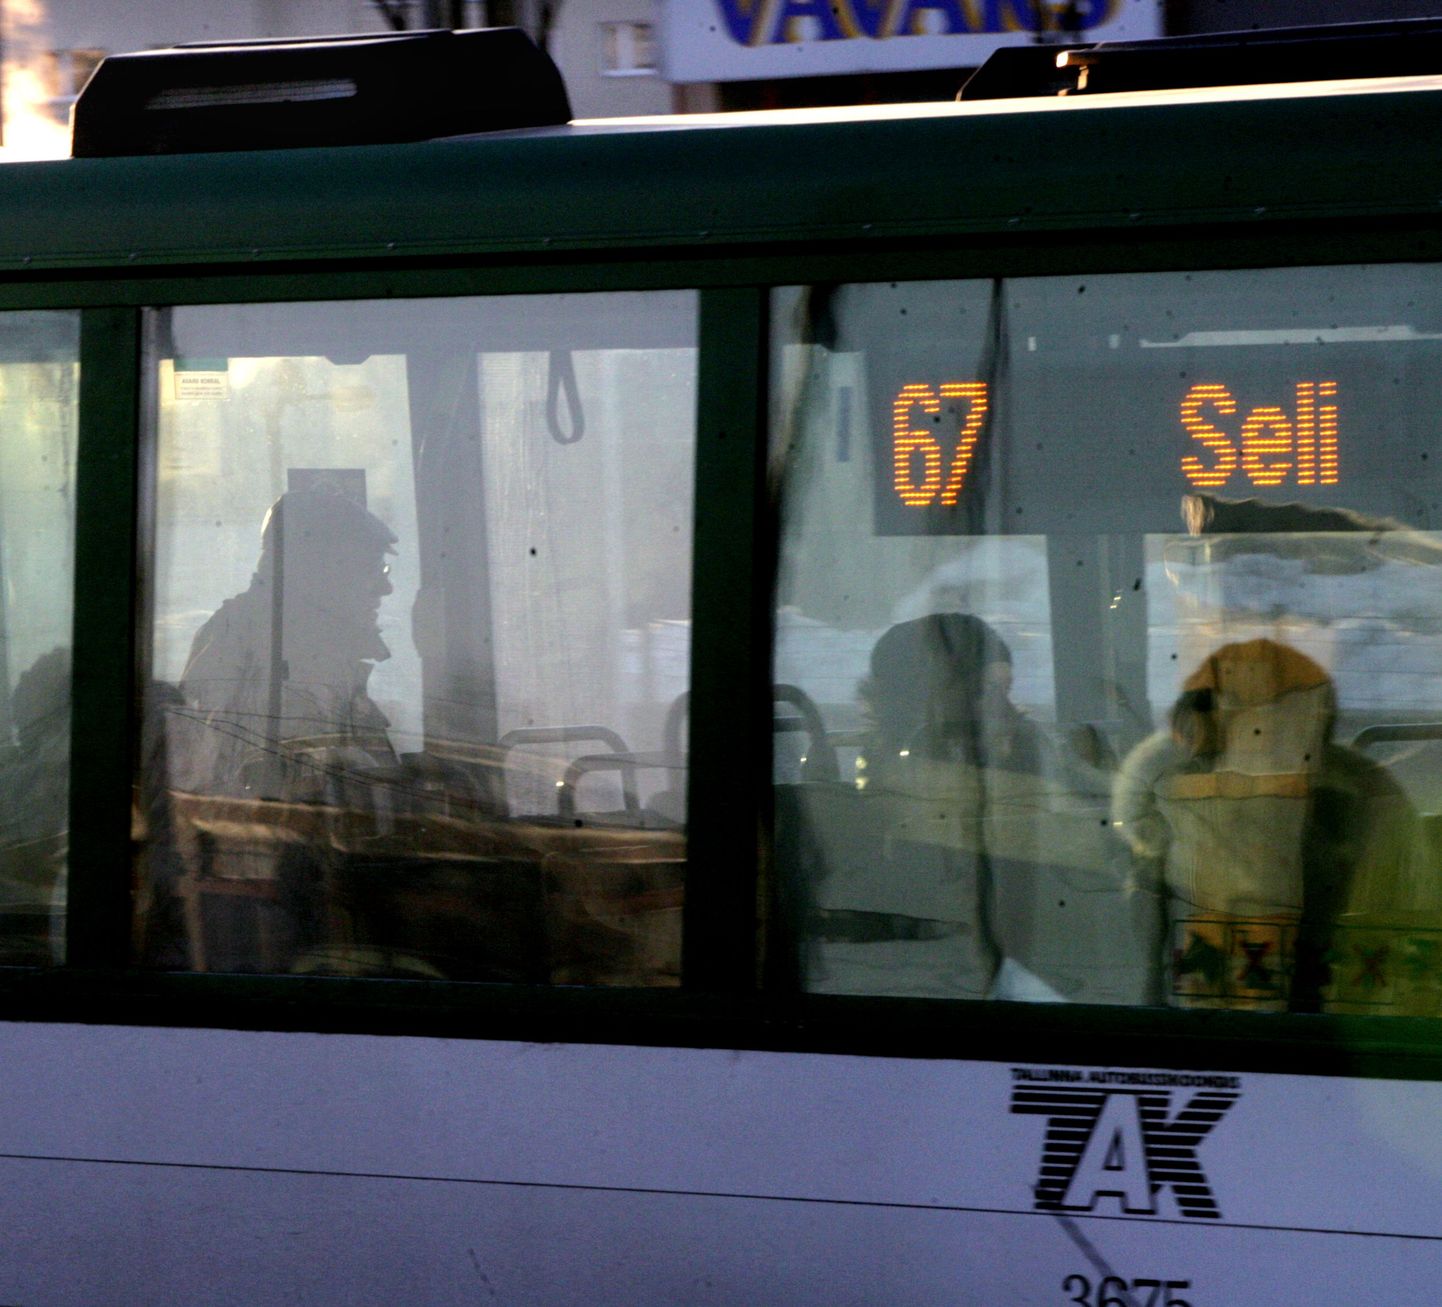 Ühistranspordi toetusstreik lasnamäel.
Foto TOOMAS HUIK/POSTIMEES